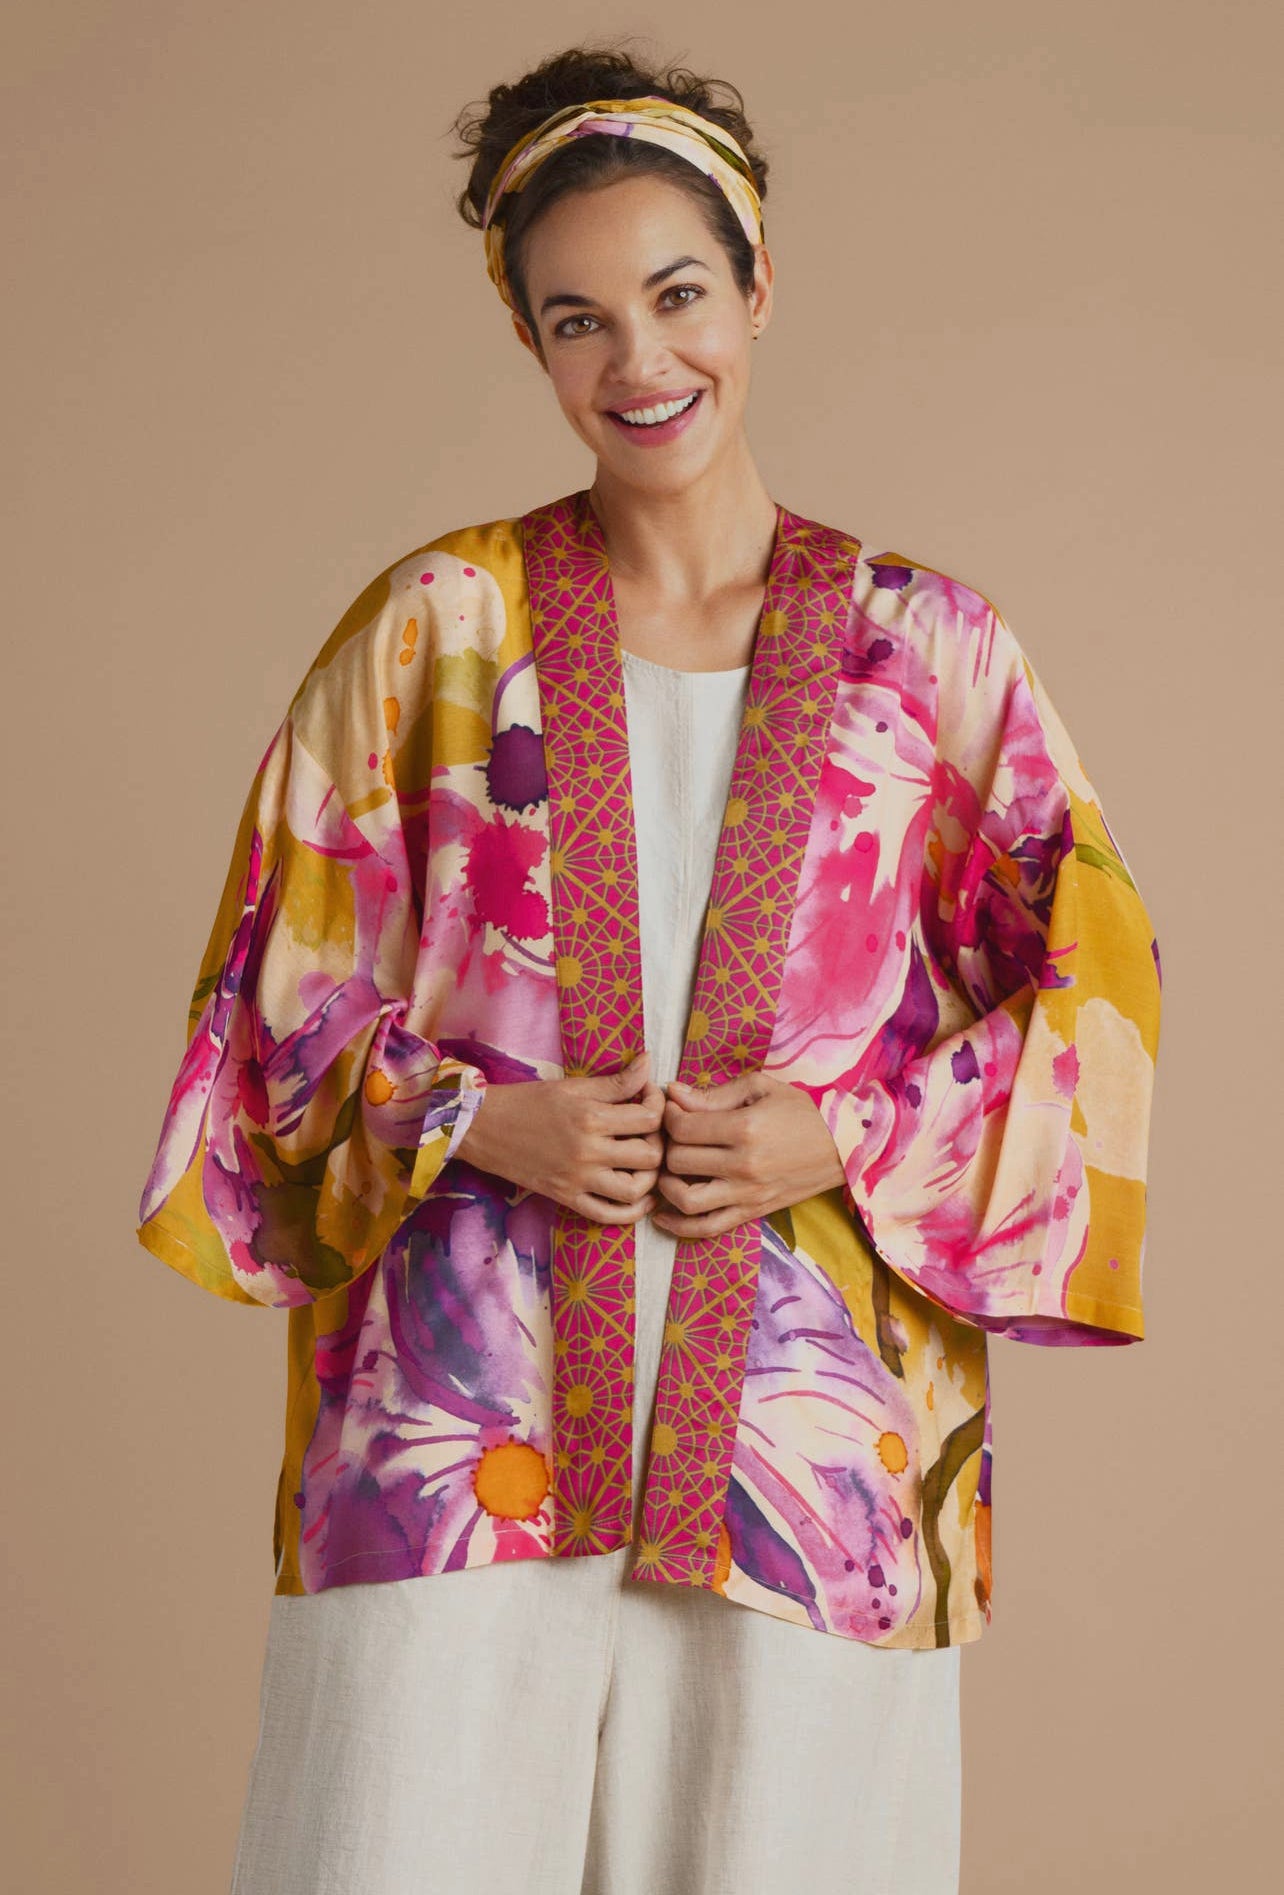 Veste kimono orchidée moutarde {Commande spéciale}